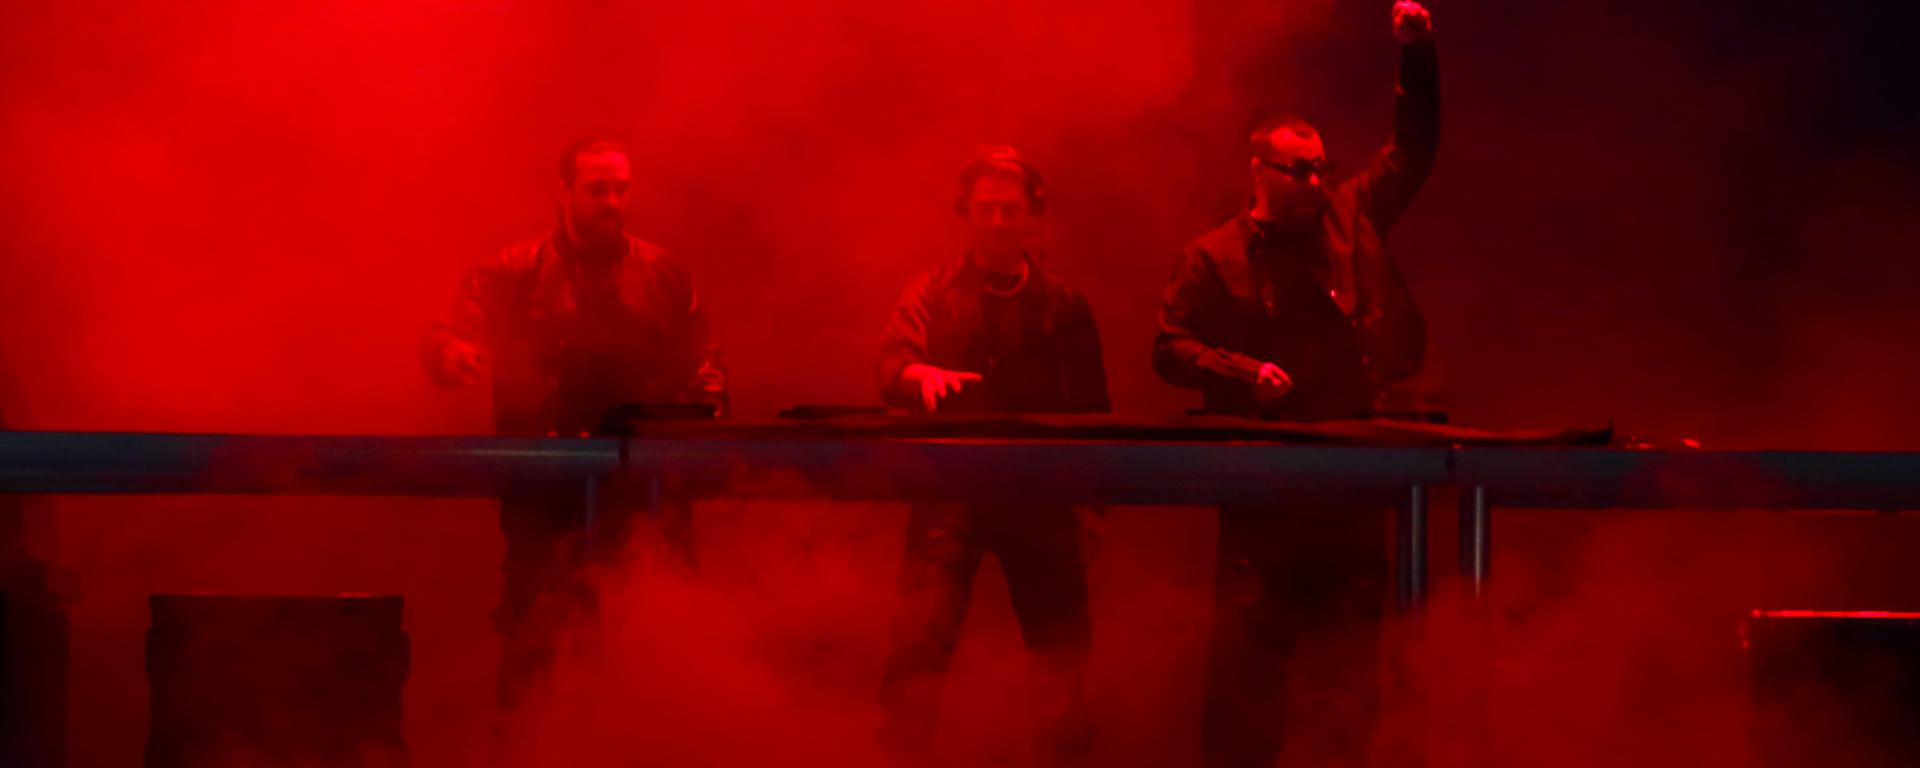 Swedish House Mafia, el trío que Lima necesitaba, encendió la noche con buena música y fuego 